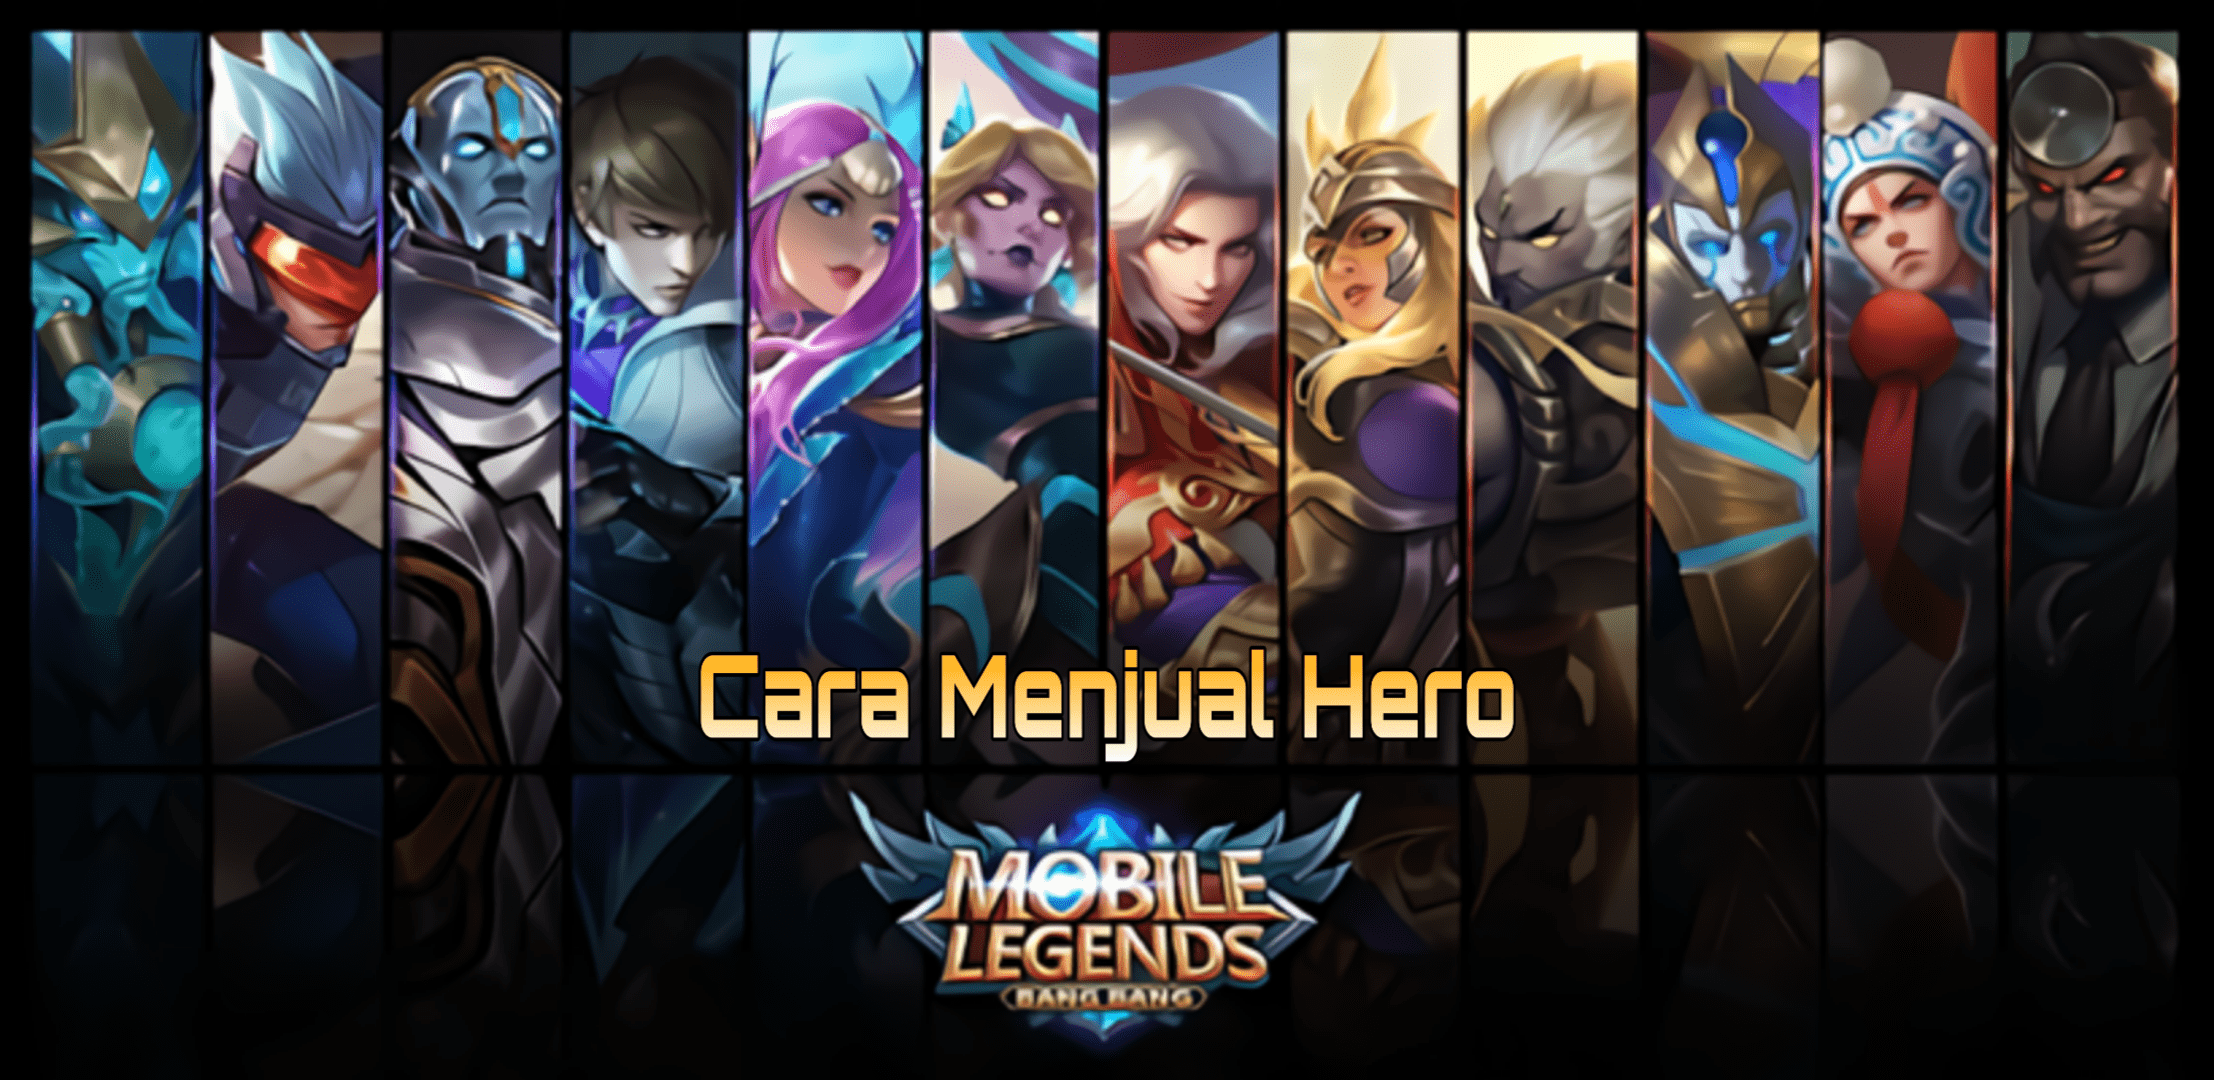 Cara menjual hero mobile legends